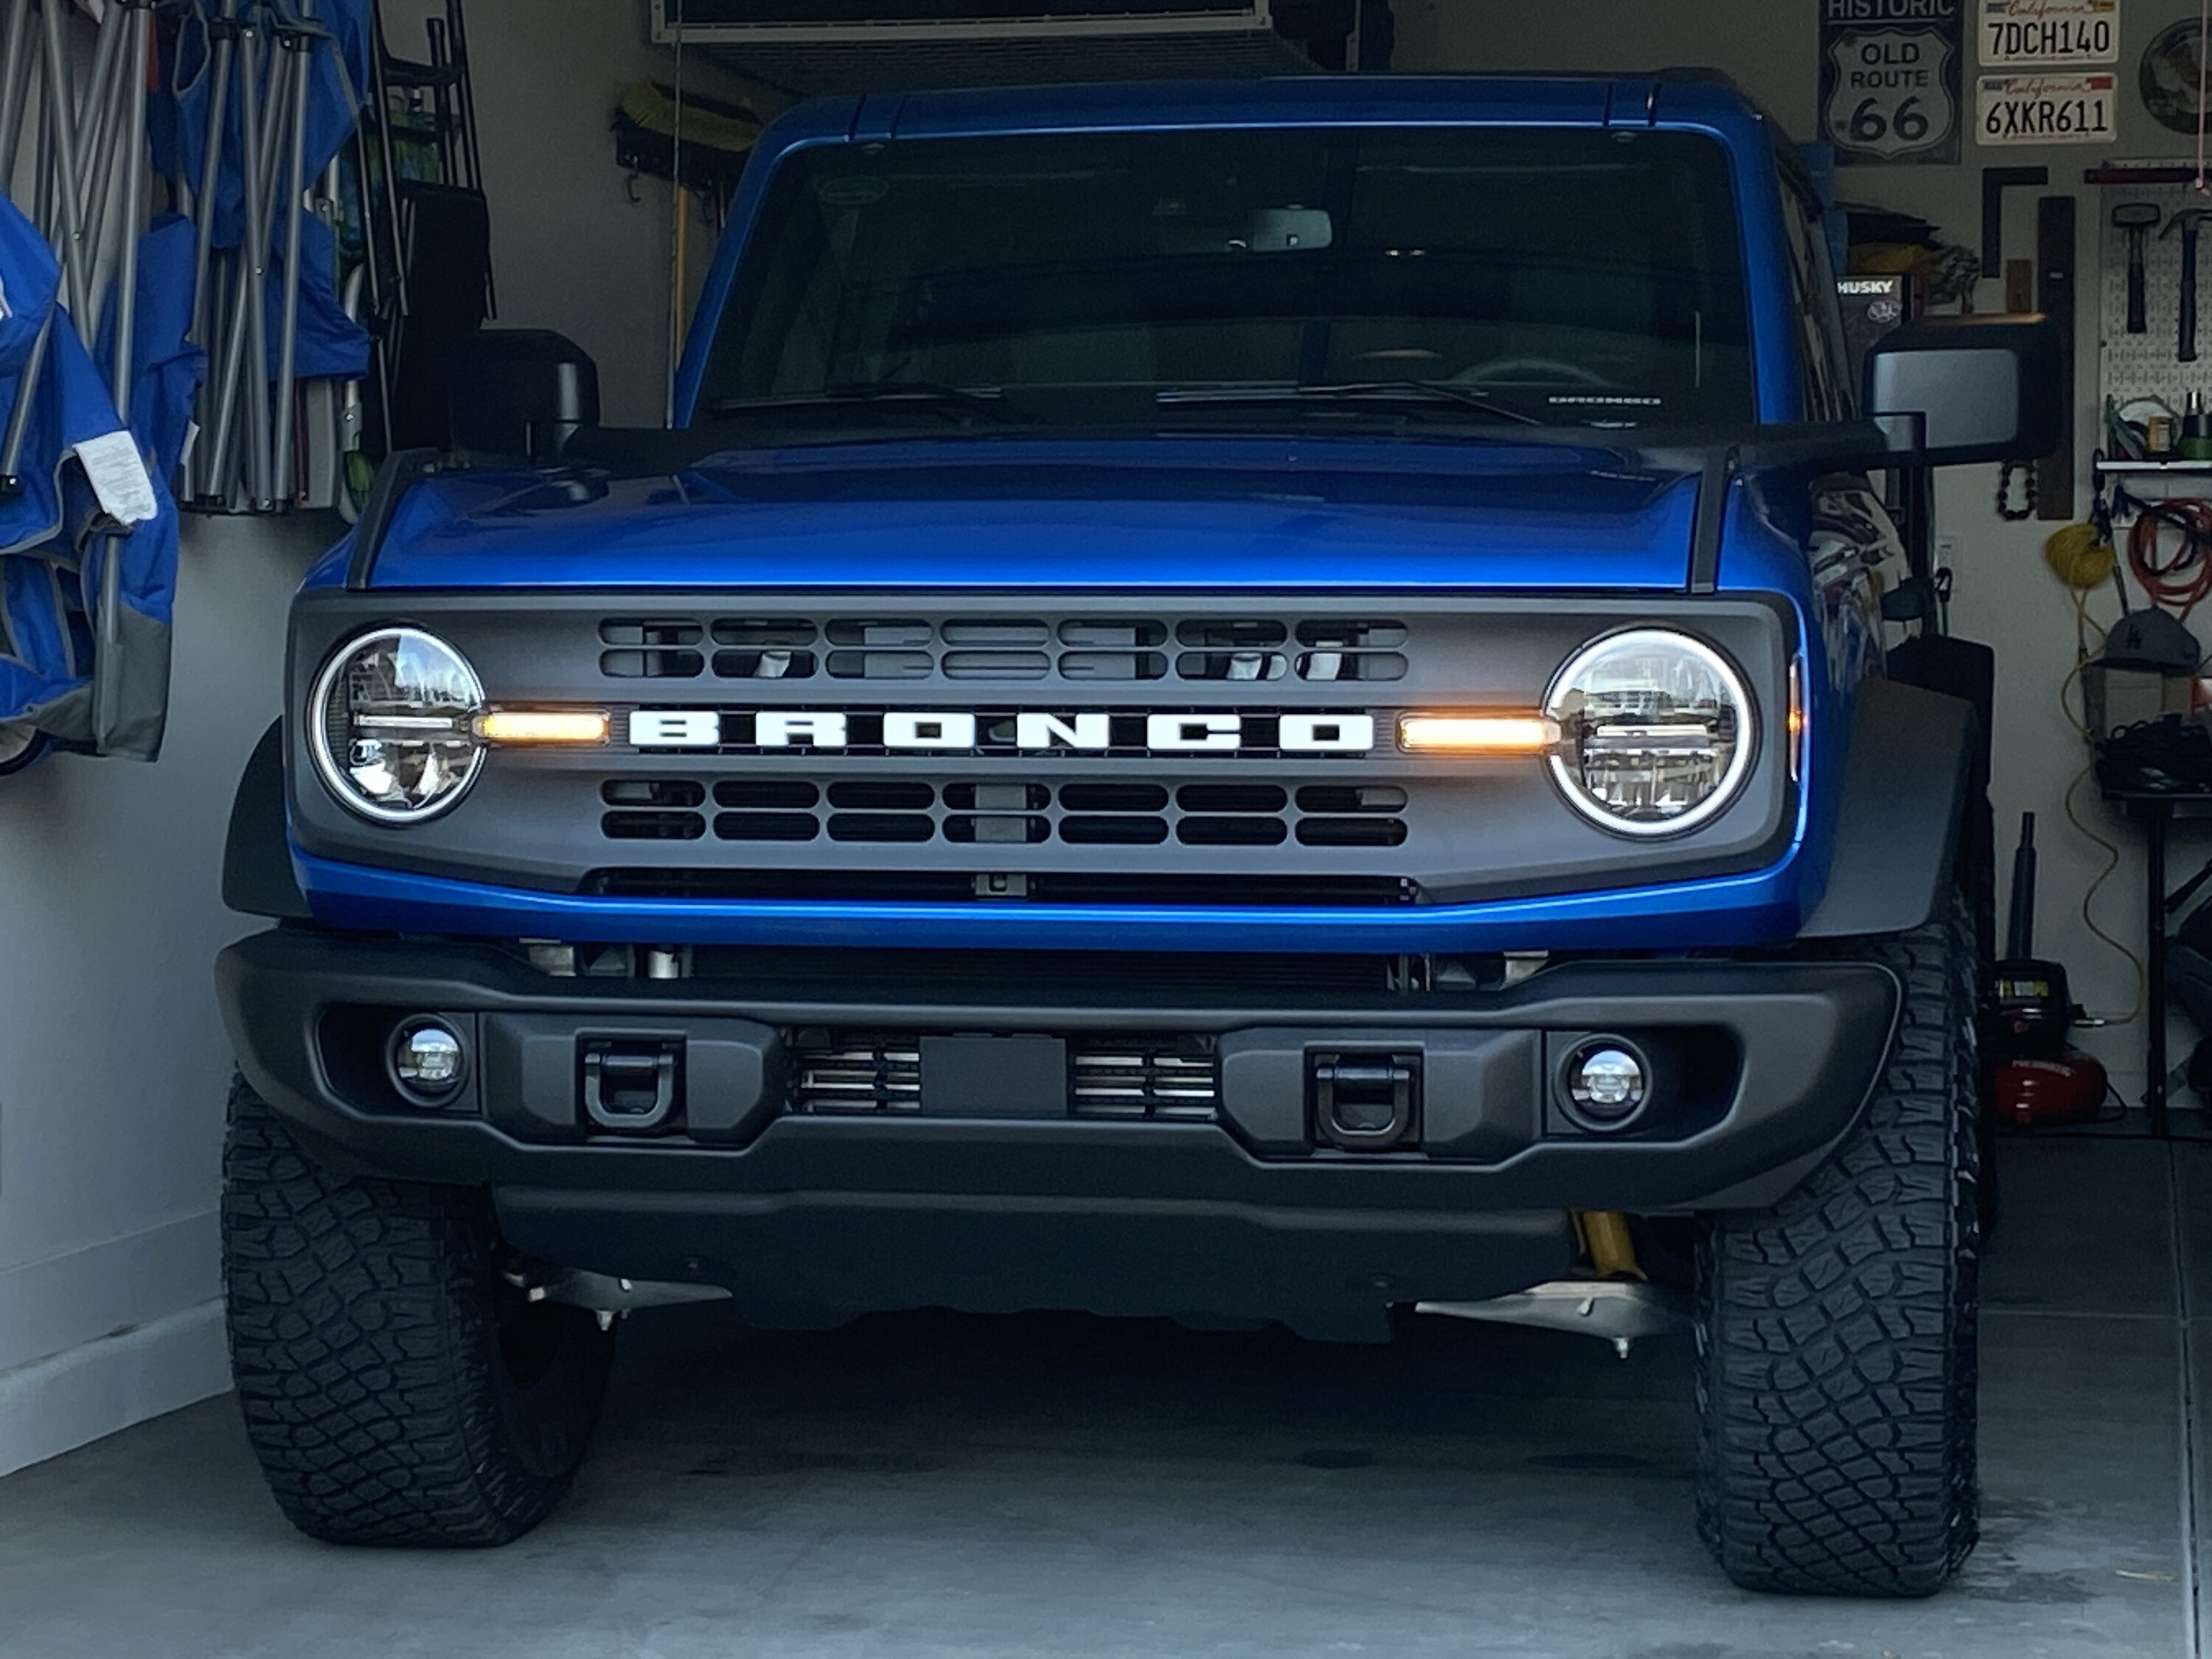 Ford Bronco VELOCITY BLUE Bronco Club 3A5E2510-D5AB-4B00-94A3-E873FAC1CBE6